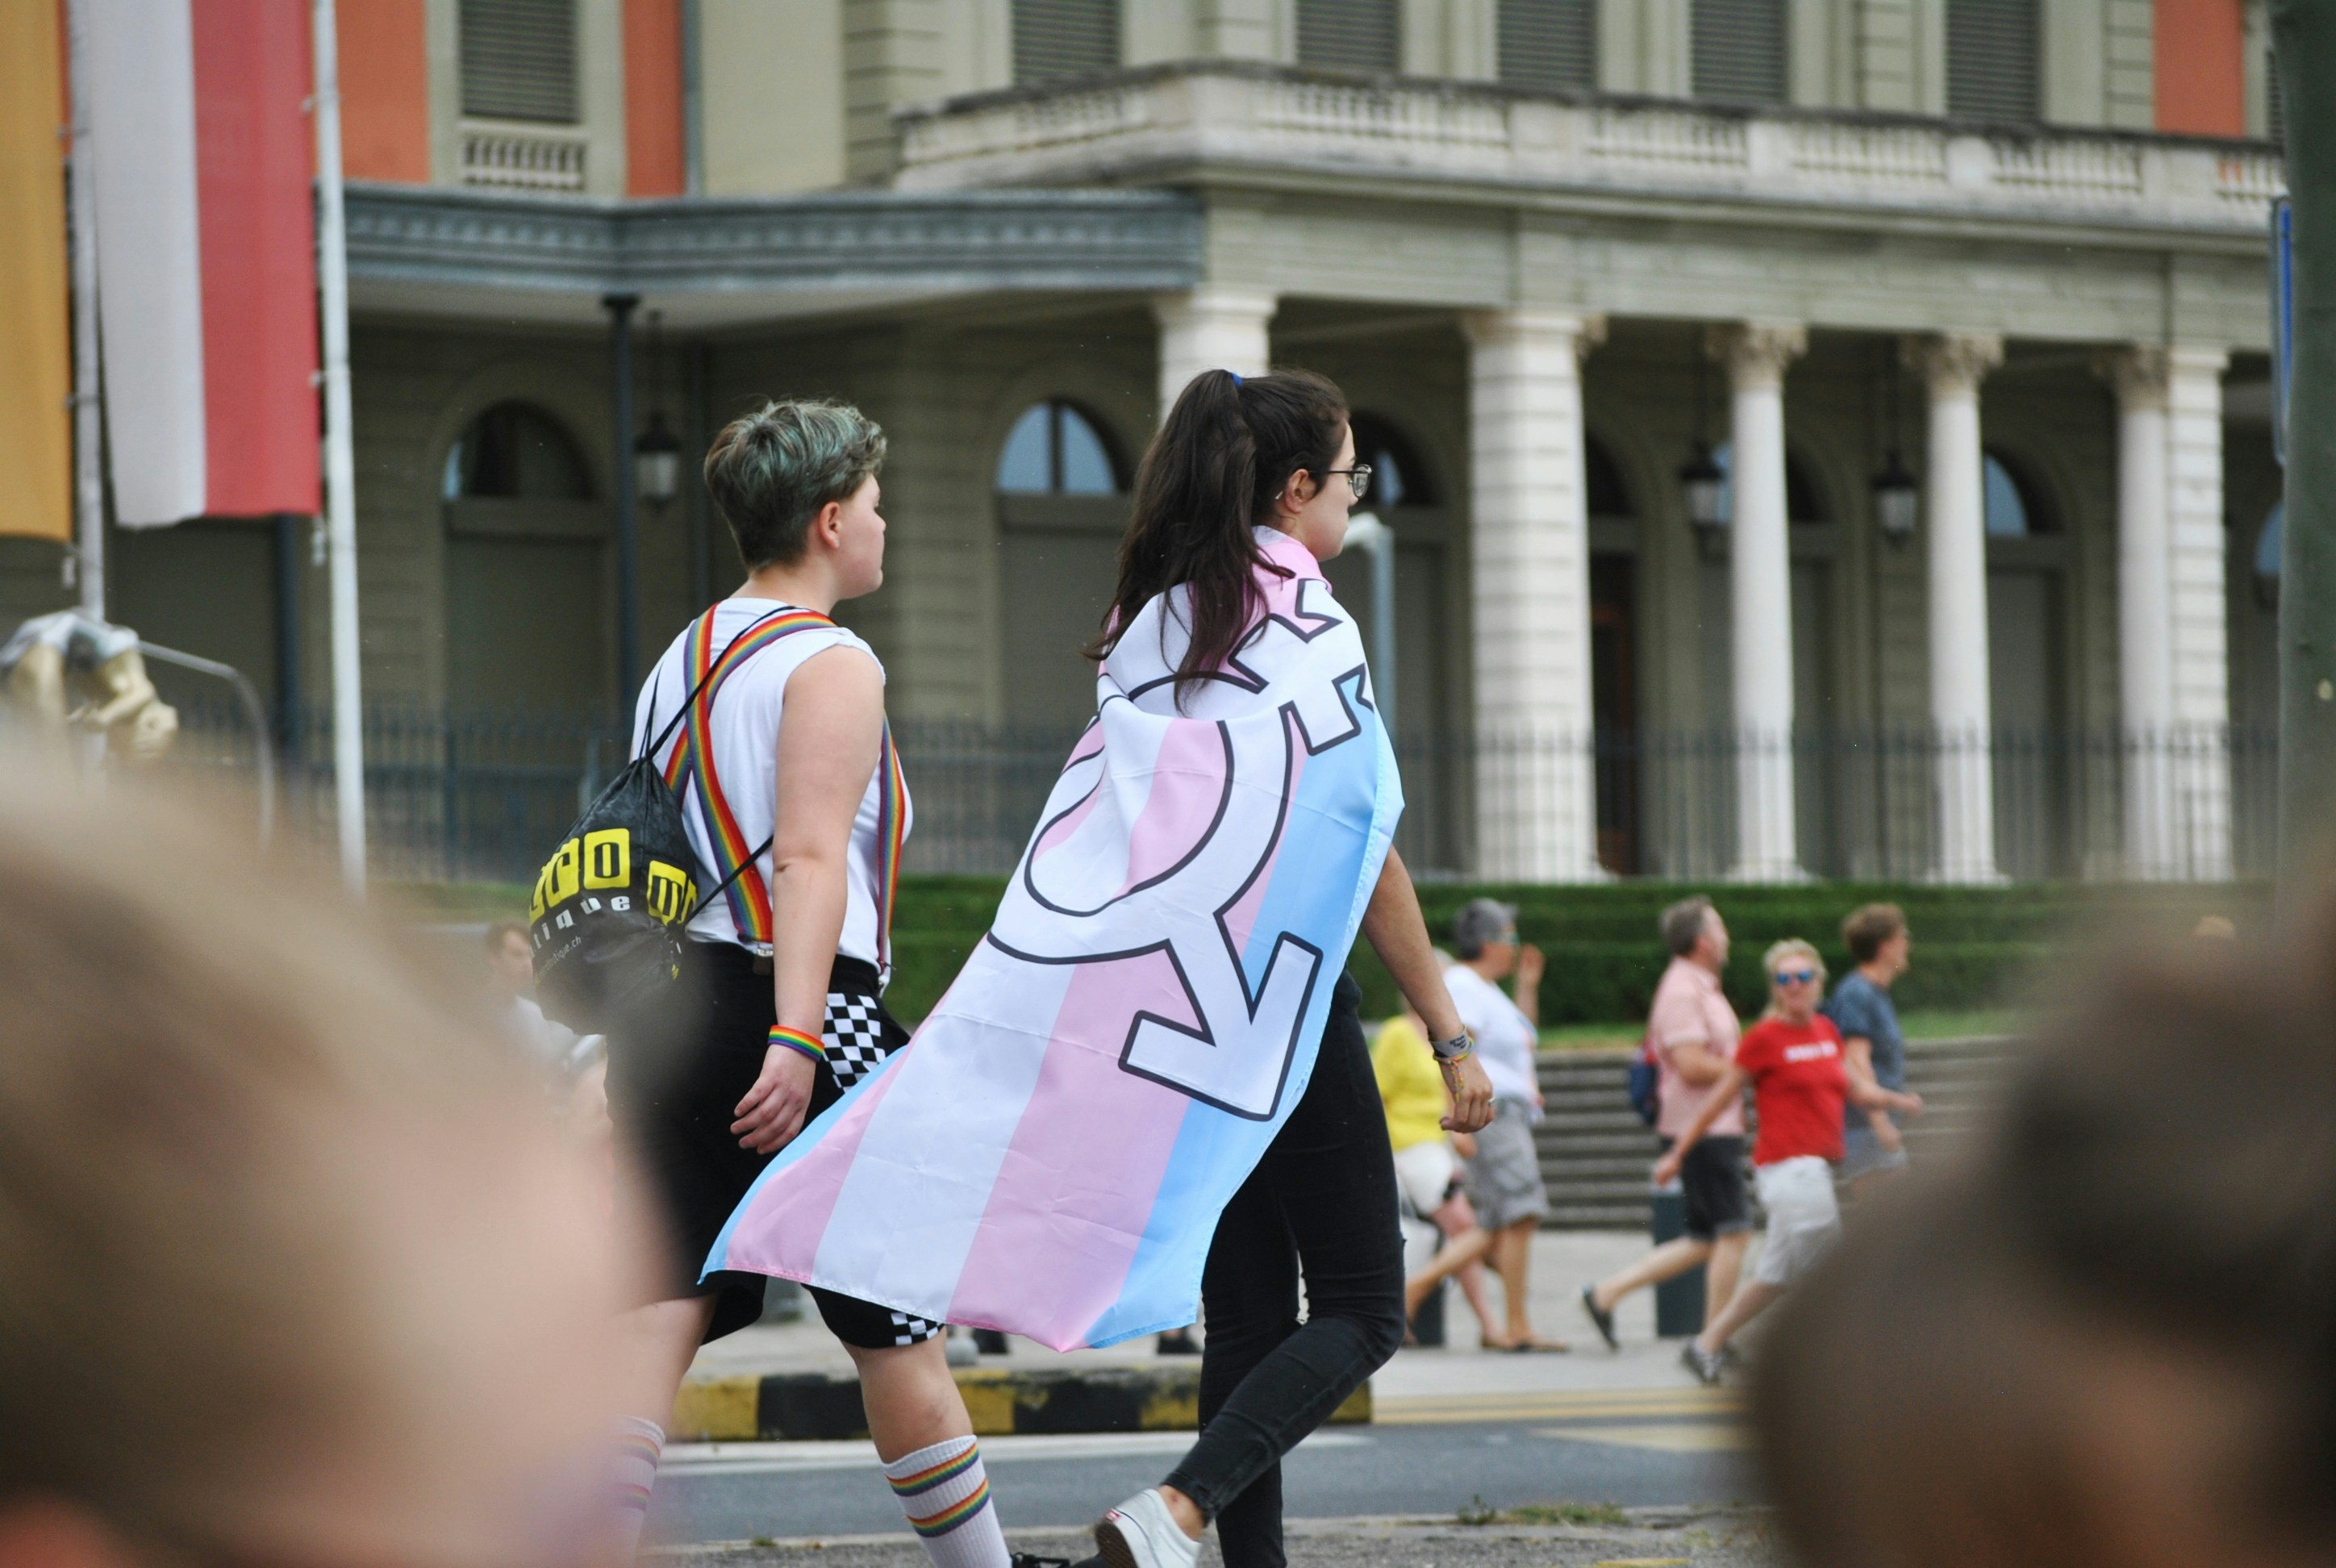 July 7th 2019, pride parade day in Geneva.